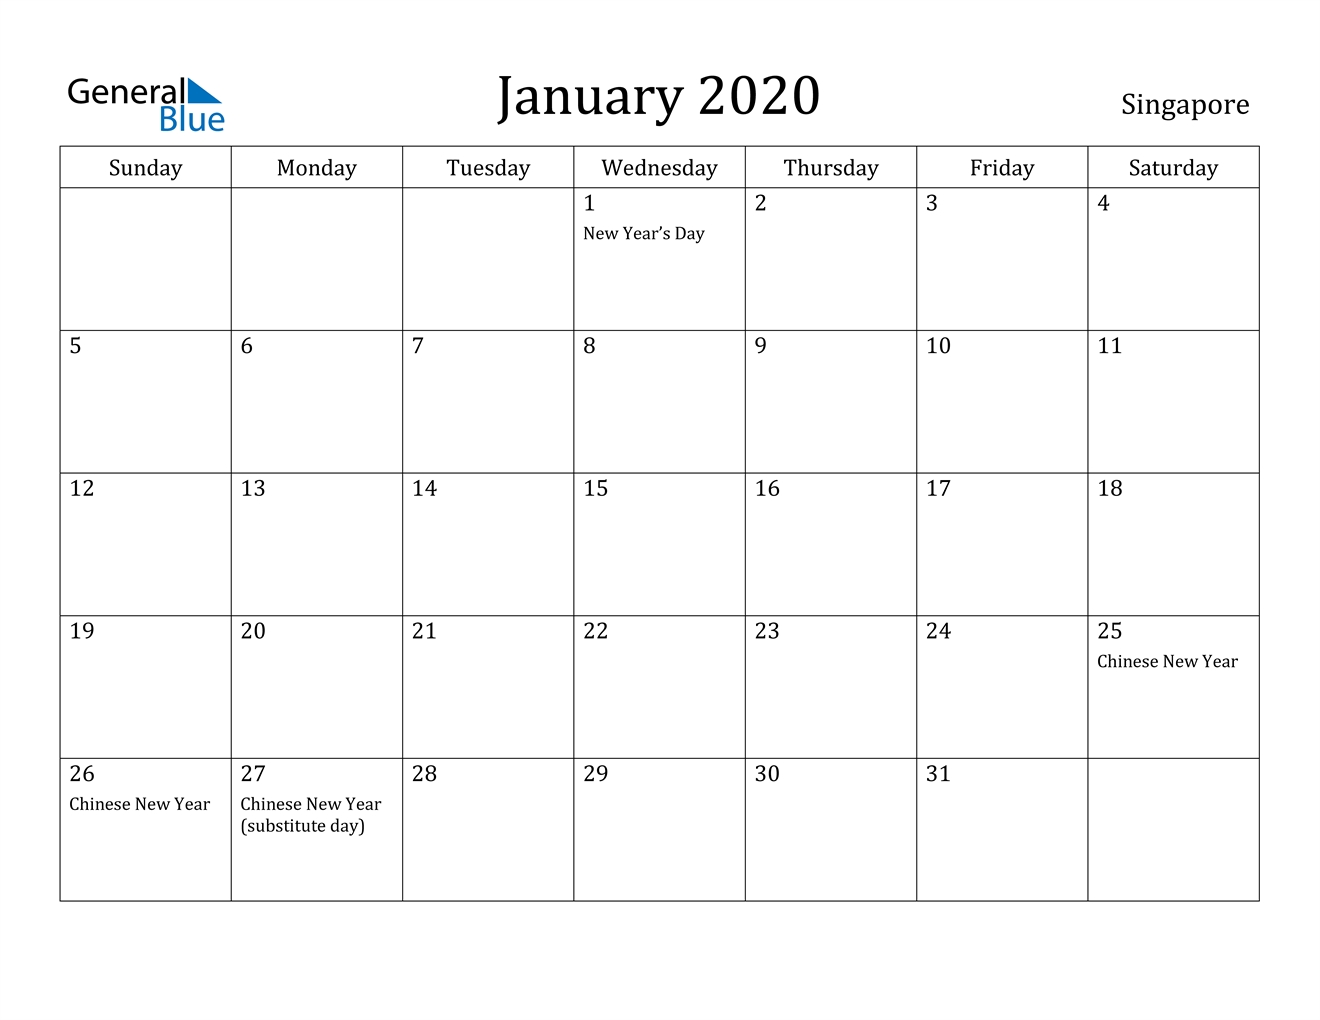 January 2020 Calendar - Singapore Singapore 2020 Calendar With Holidays